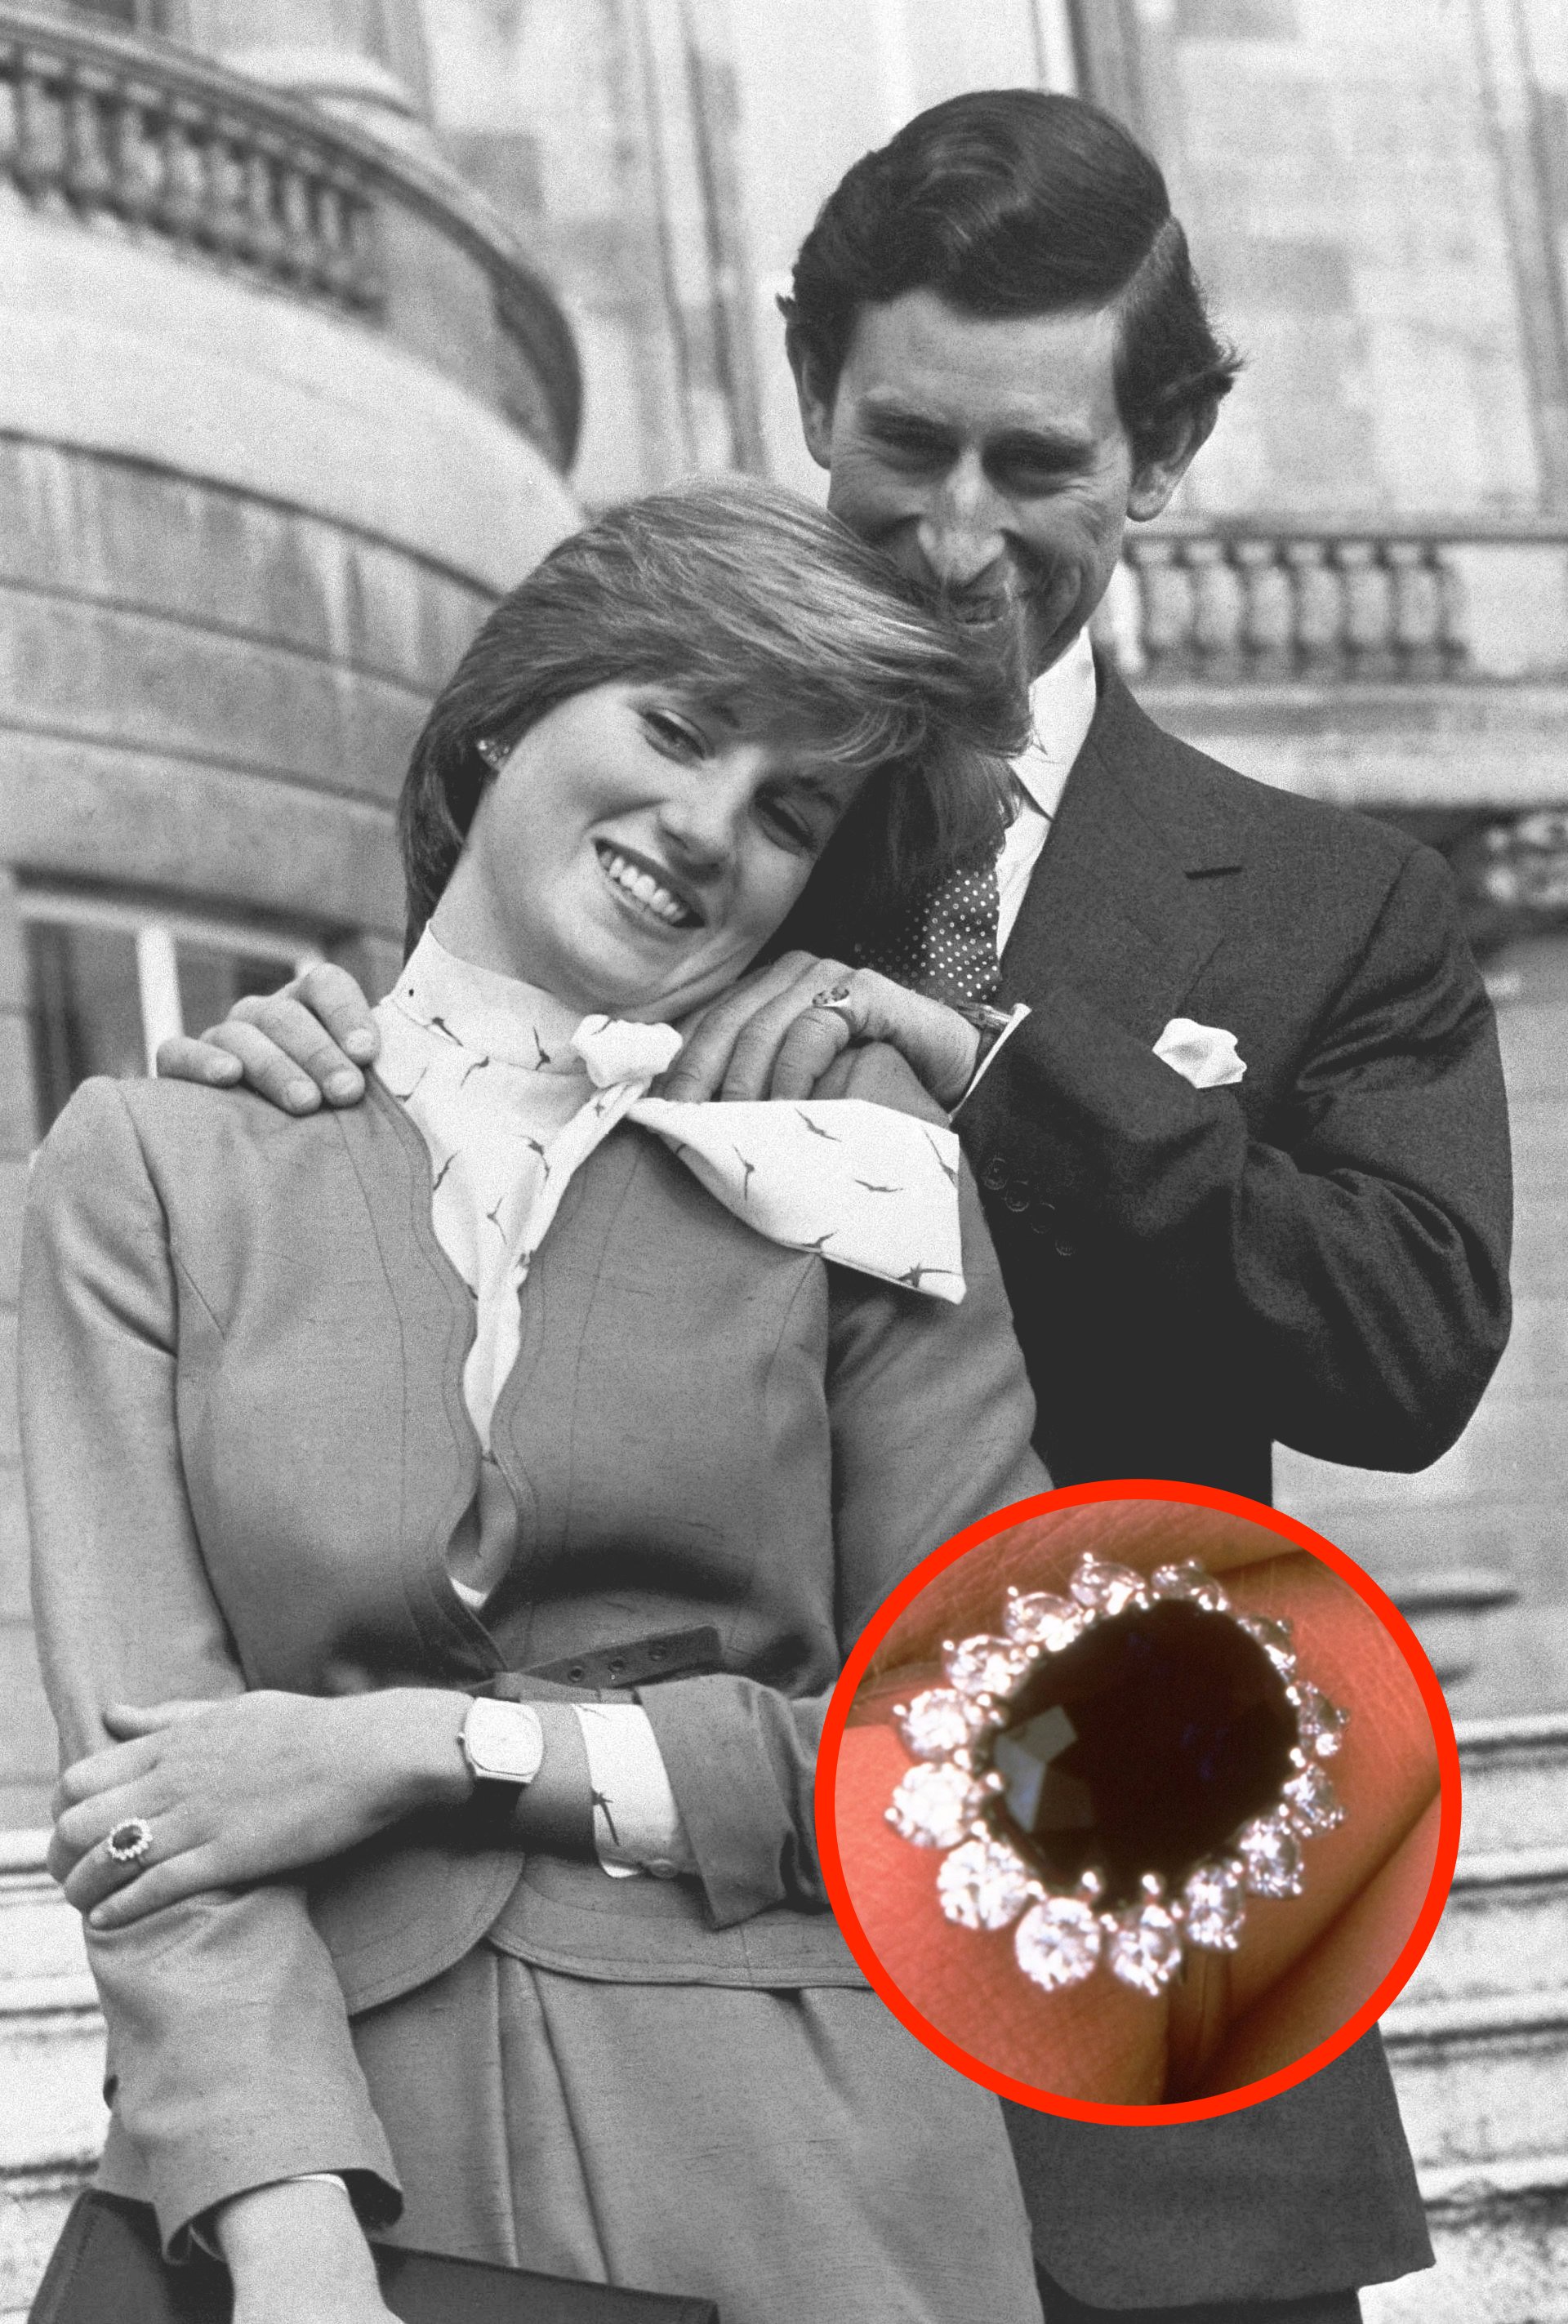   Thái tử Charles và Công nương Diana tại Điện Buckingham sau khi tuyên bố lễ đính hôn của họ ngày 24/2/1981 – Nguồn: The Daily Mail  